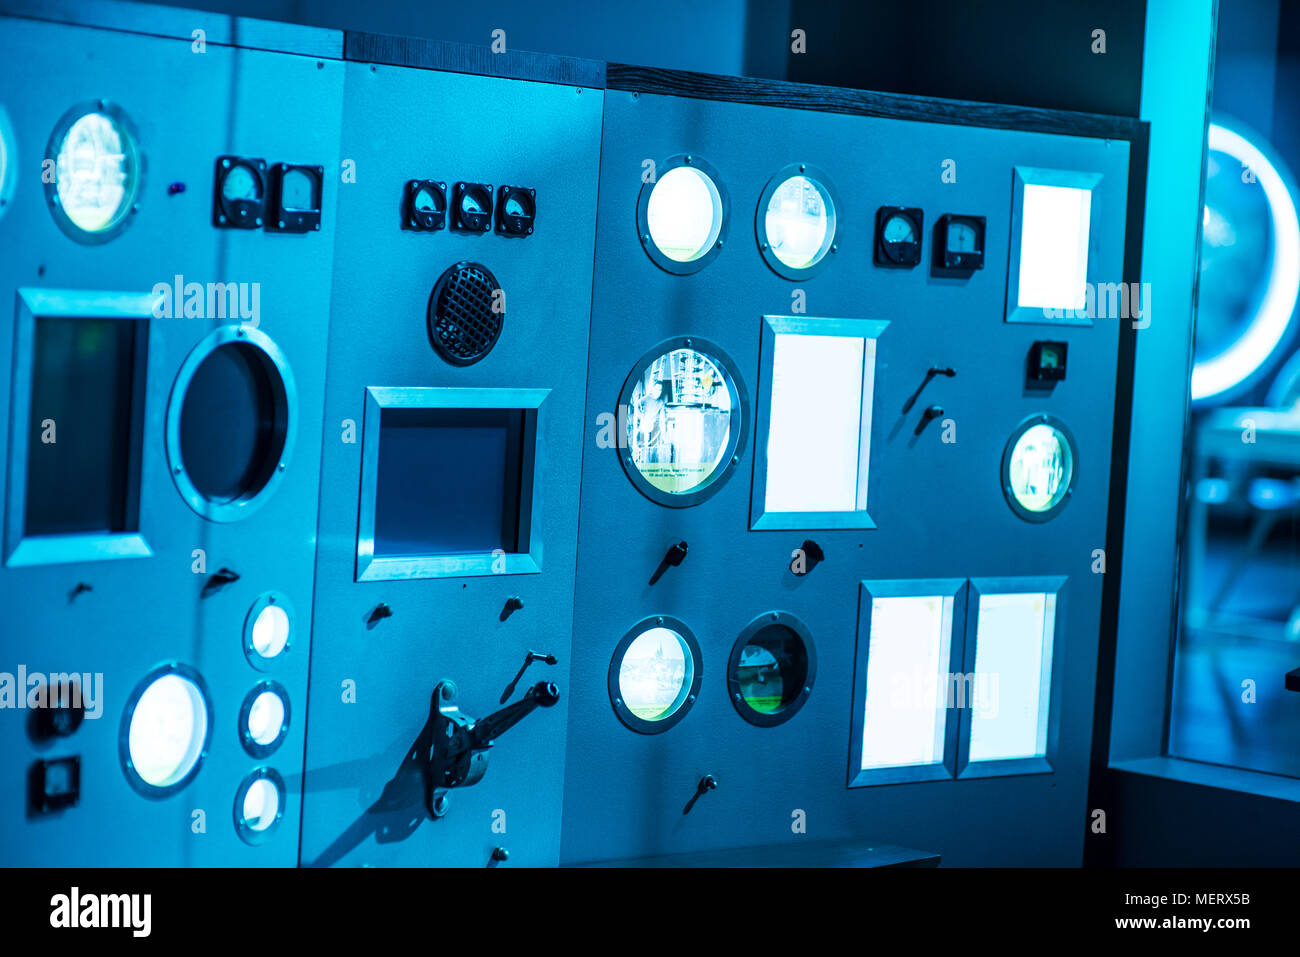 Le righe degli indicatori e dei comandi in russo il reattore atomico, il primo completamente funzionale di reattore nucleare nel mondo, pannello di controllo. Foto Stock